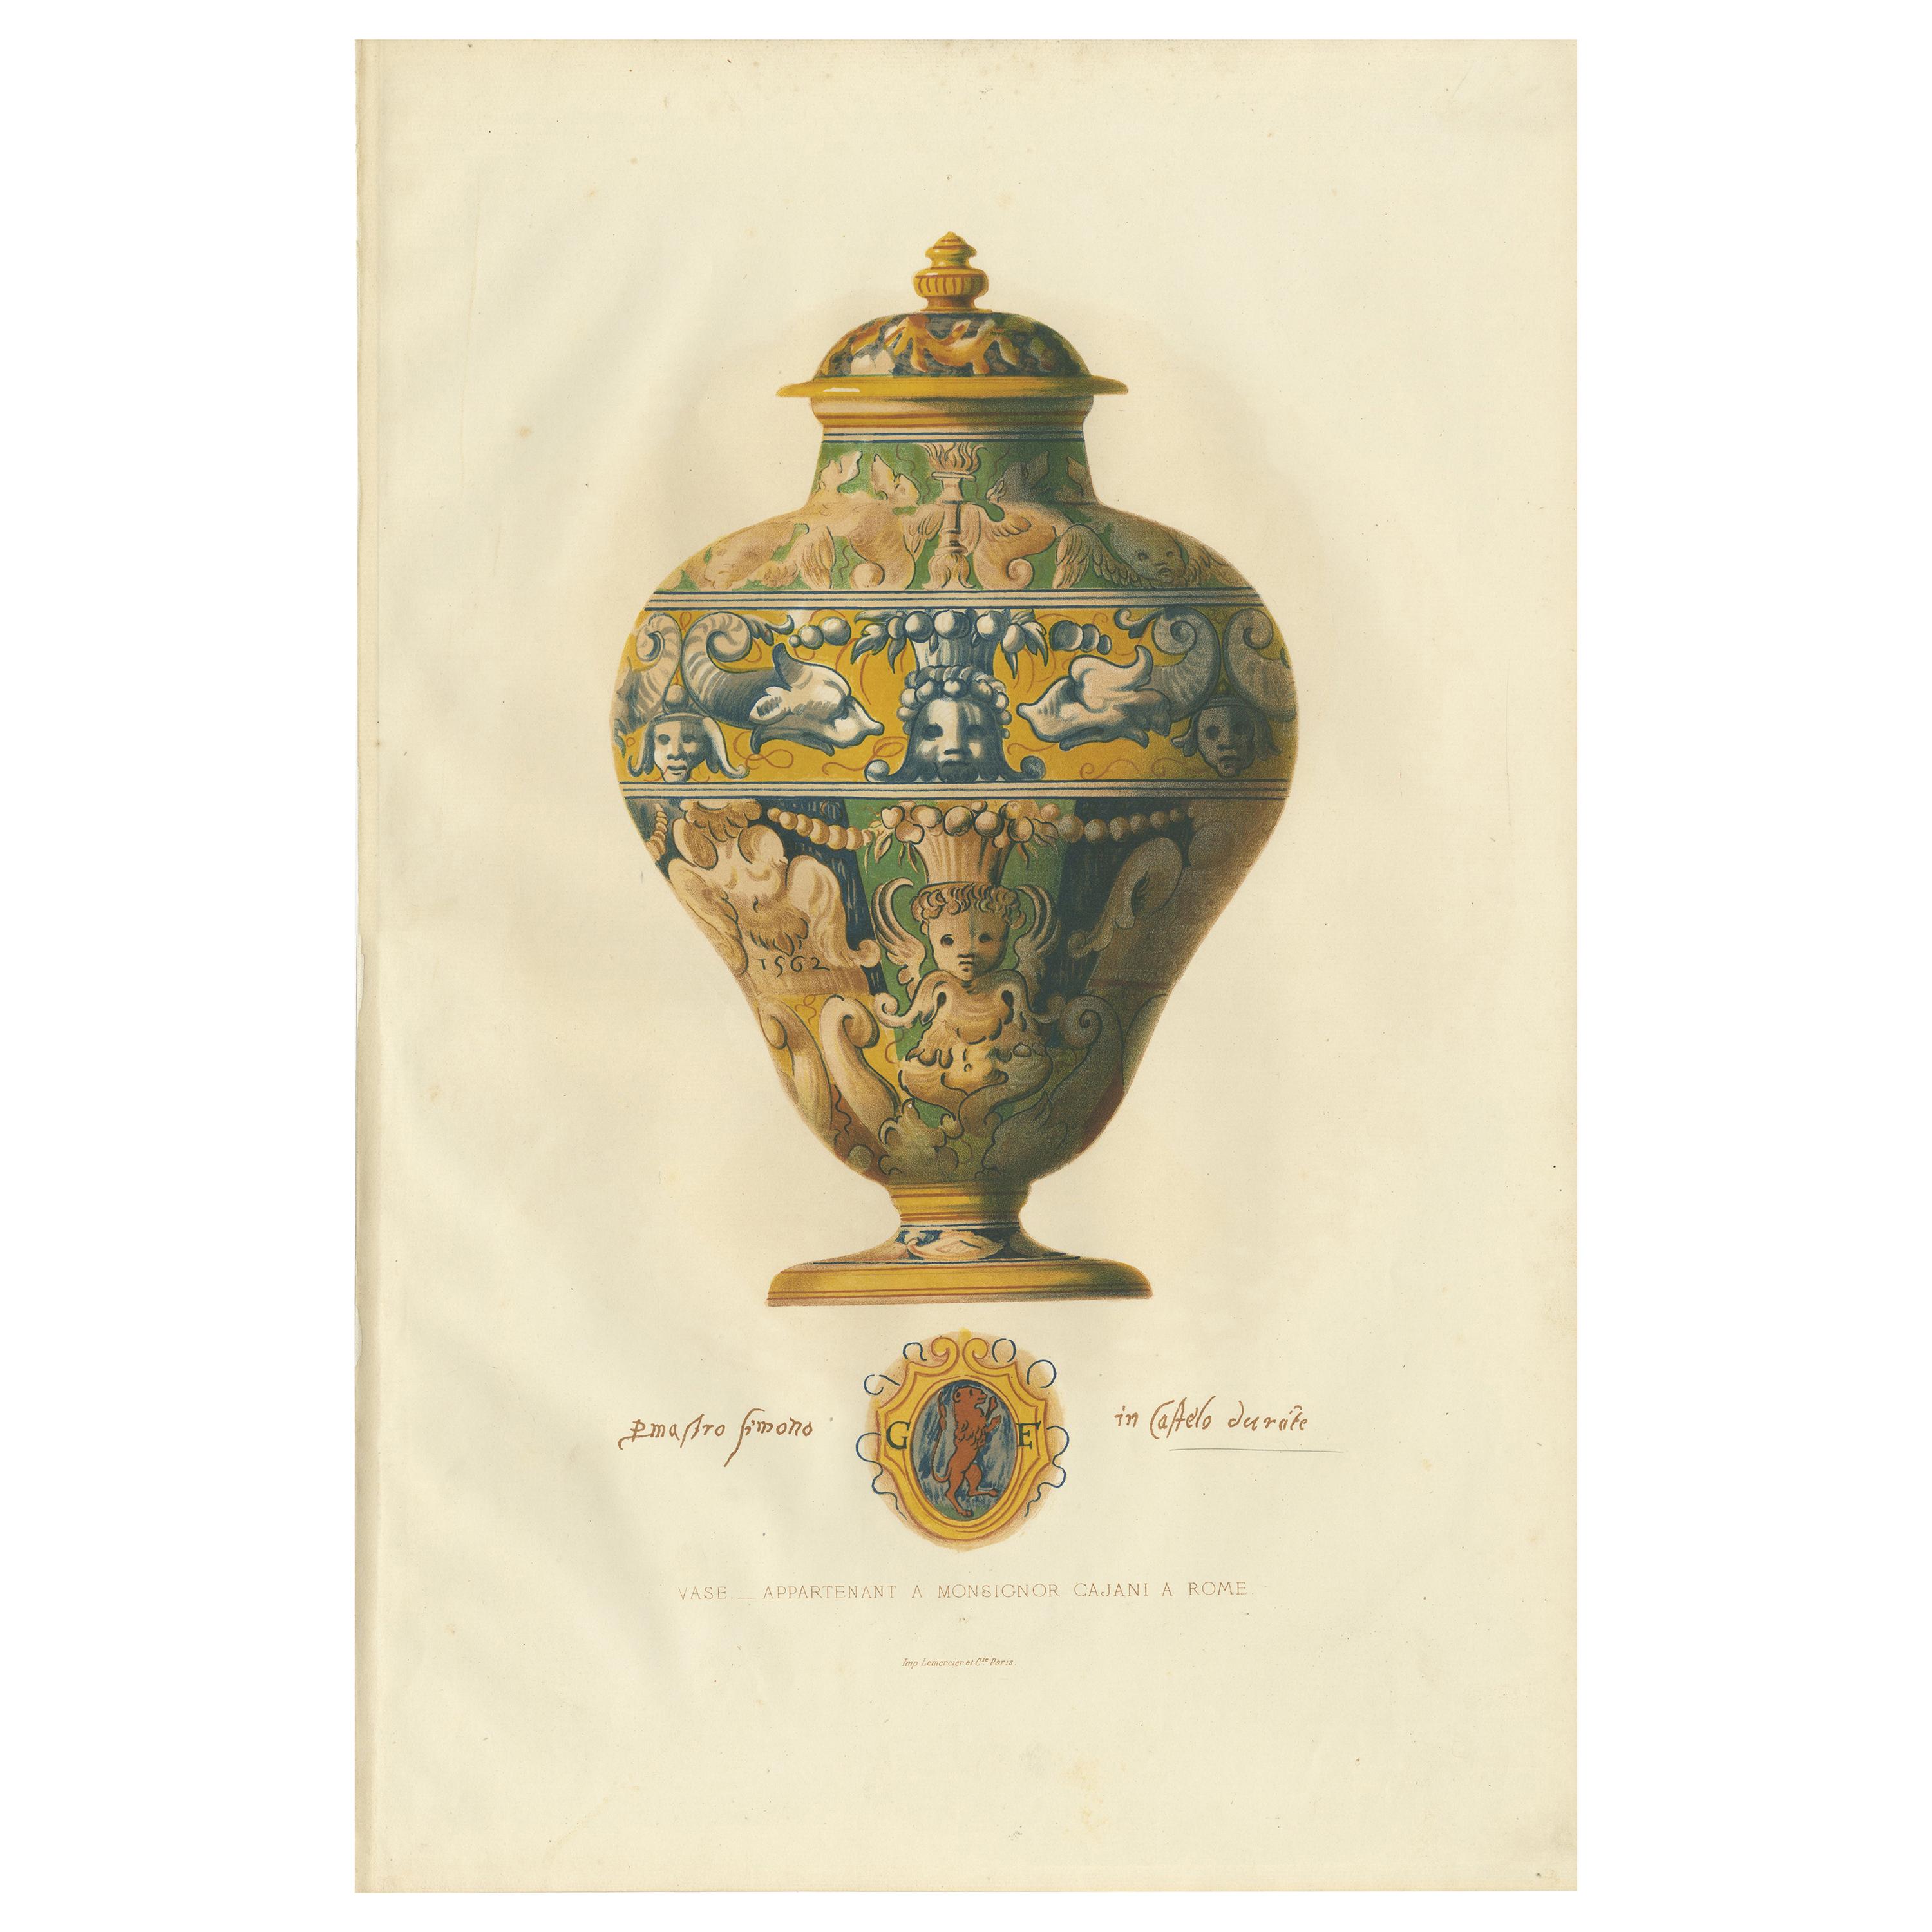 Impression ancienne d'un vase de Monsignor Cajani par Delange (1869)